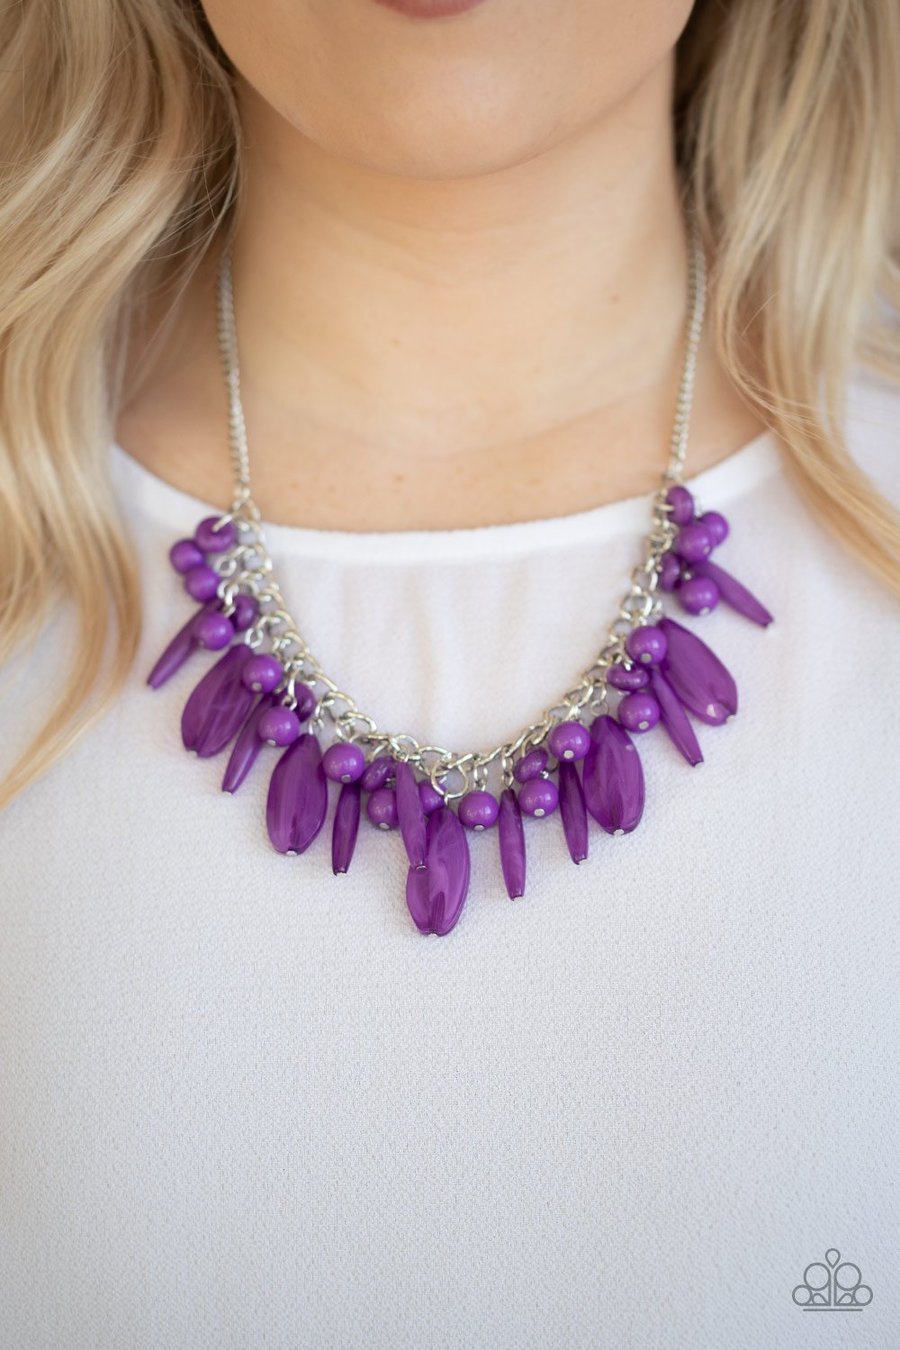 Papparazzi Accessories - Miami Martinis - Purple Necklace